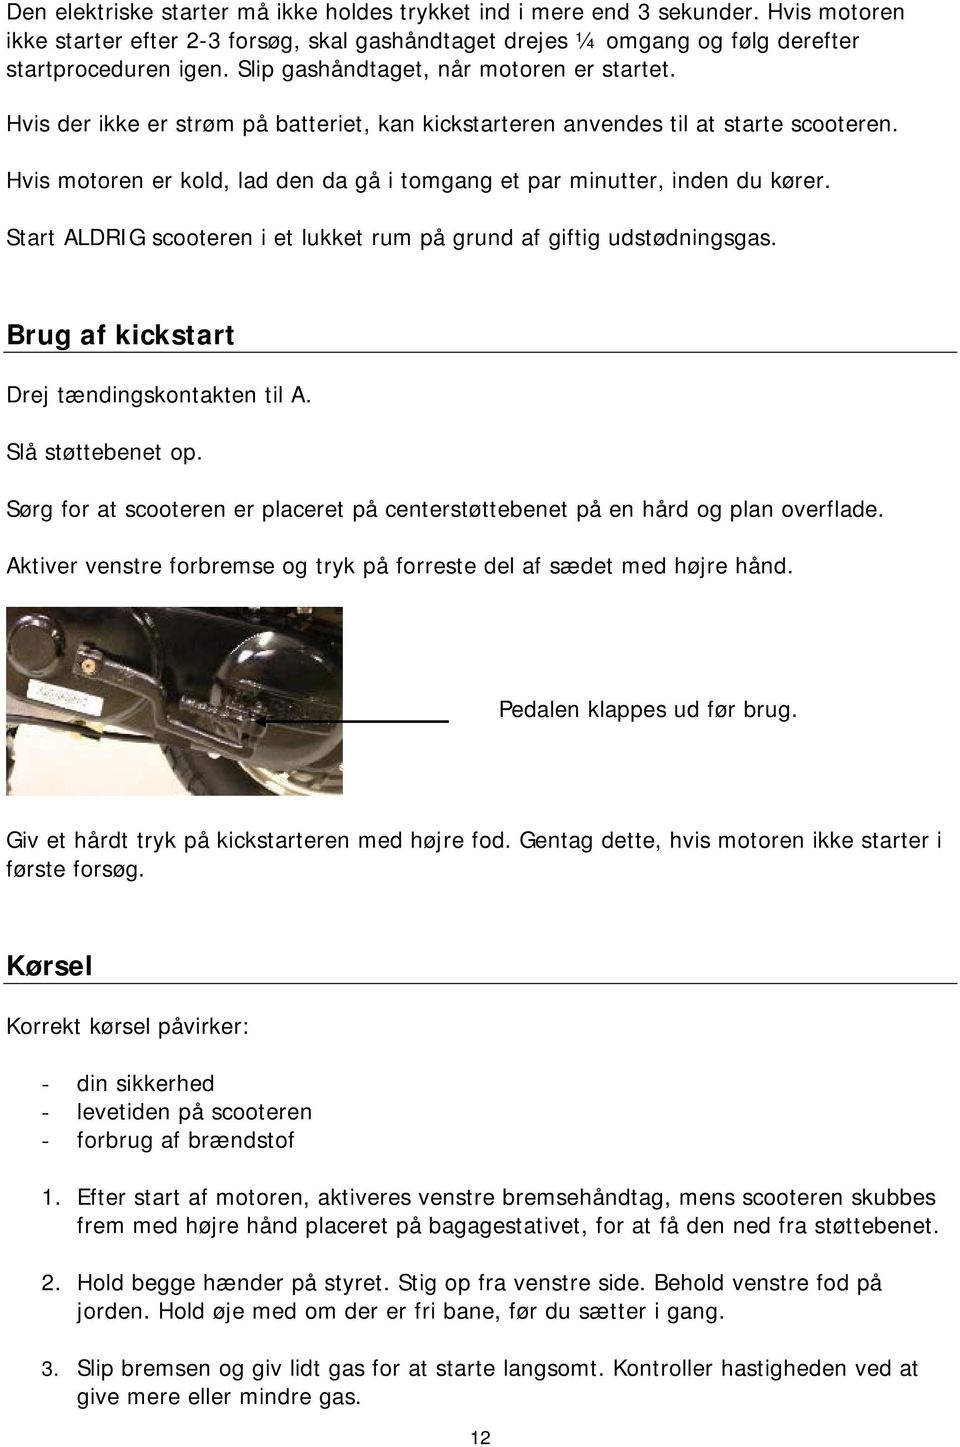 DK Betjeningsvejledning GB User manual Model - PDF Gratis download